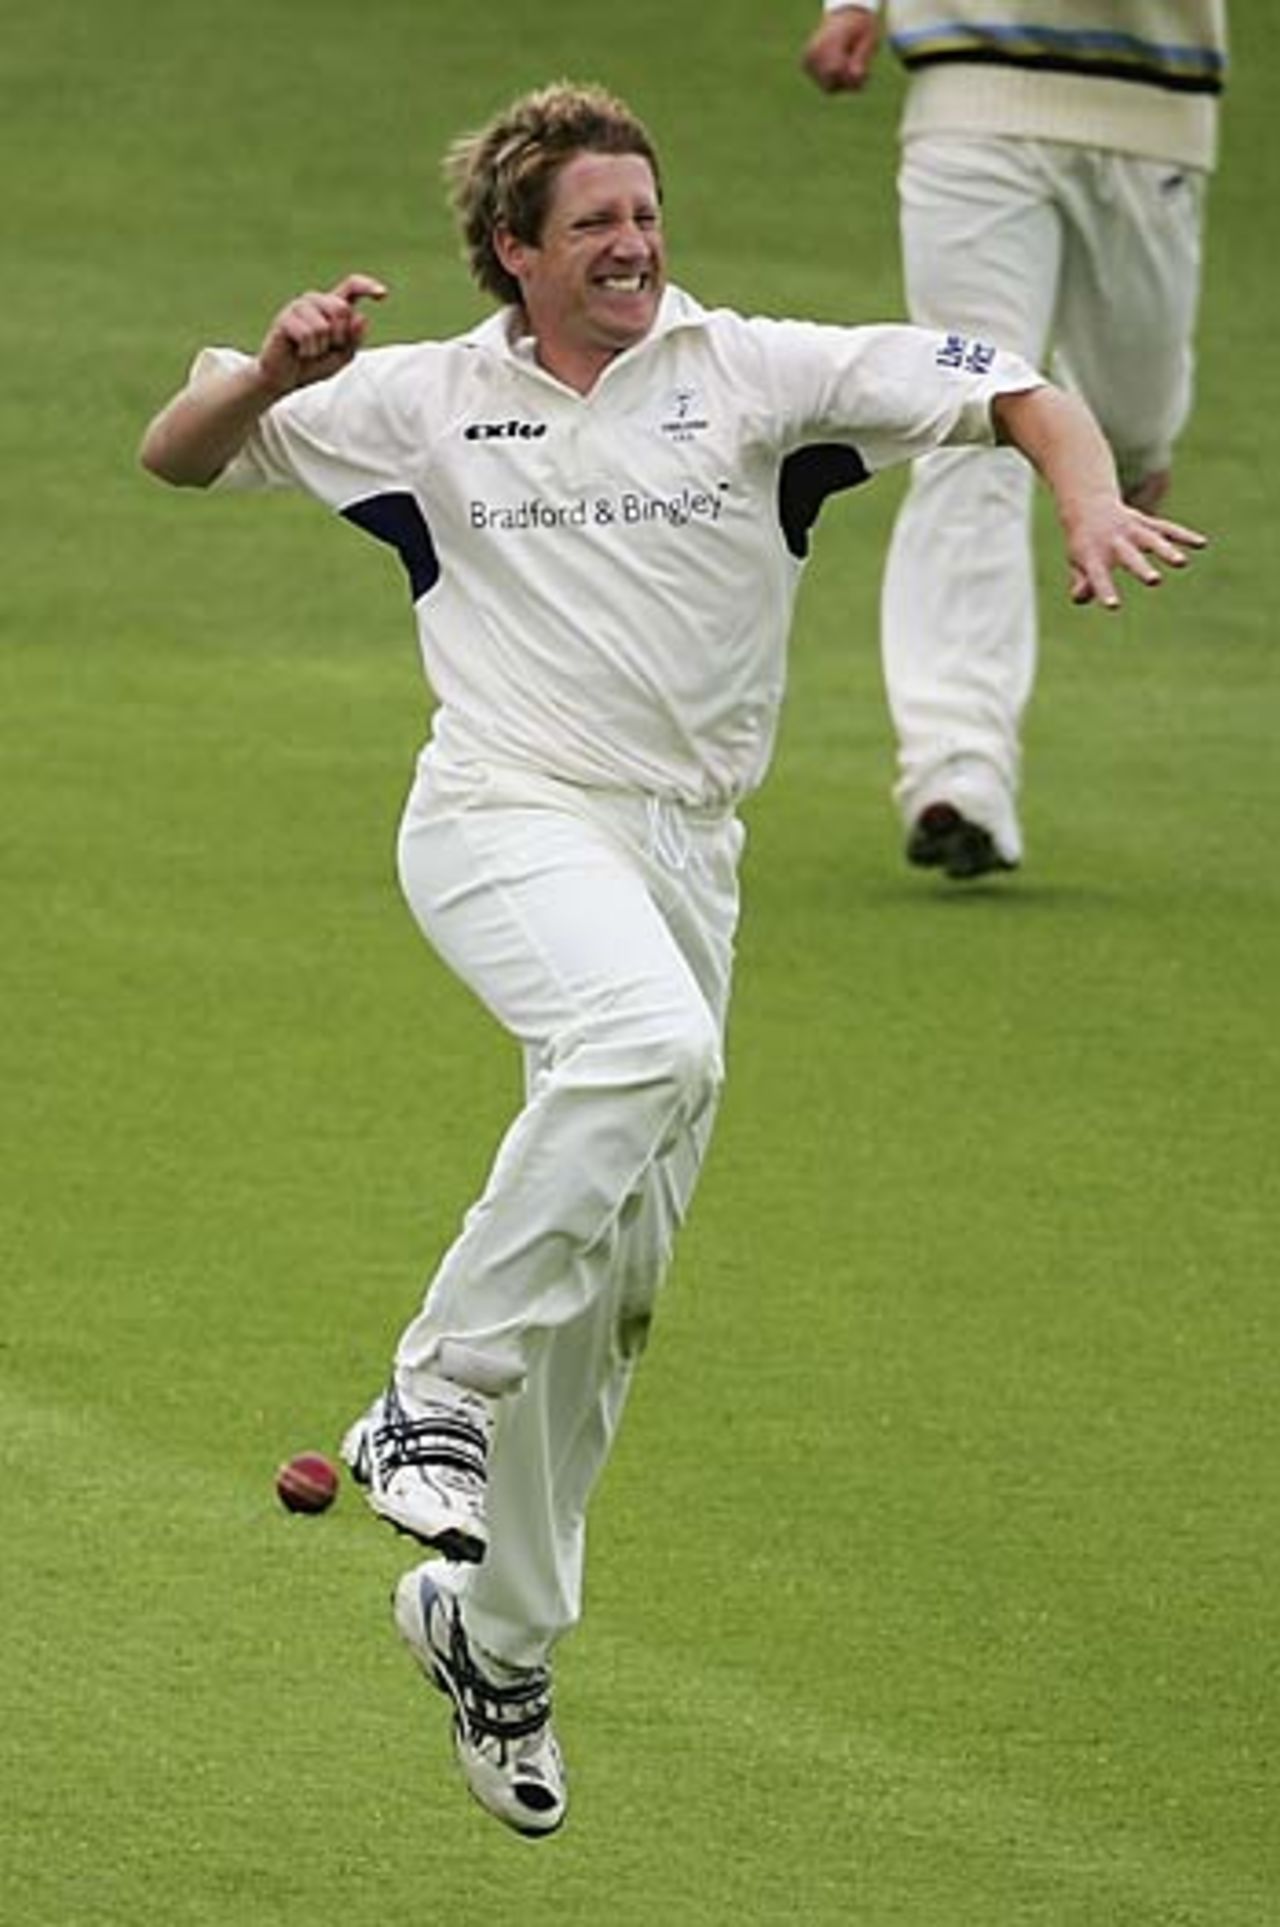 John Blain celebrates the wicket of Brad Hodge, Yorkshire v Lancashire, Headingley, May 16, 2006 